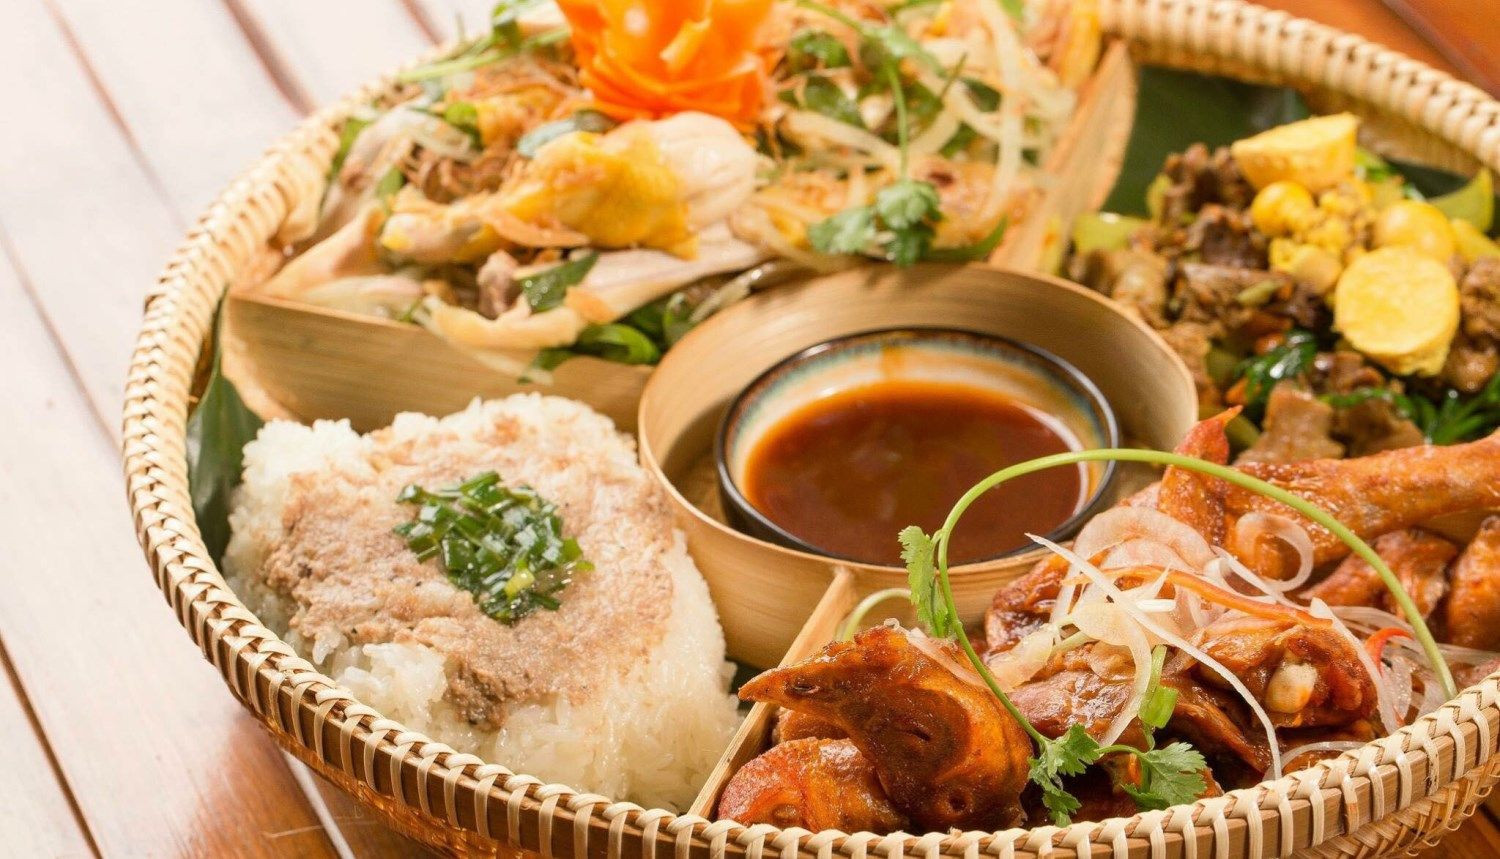 Nhiều món ăn Việt Nam được du khách các nước đánh giá cao về hương vị cũng như chất dinh dưỡng.